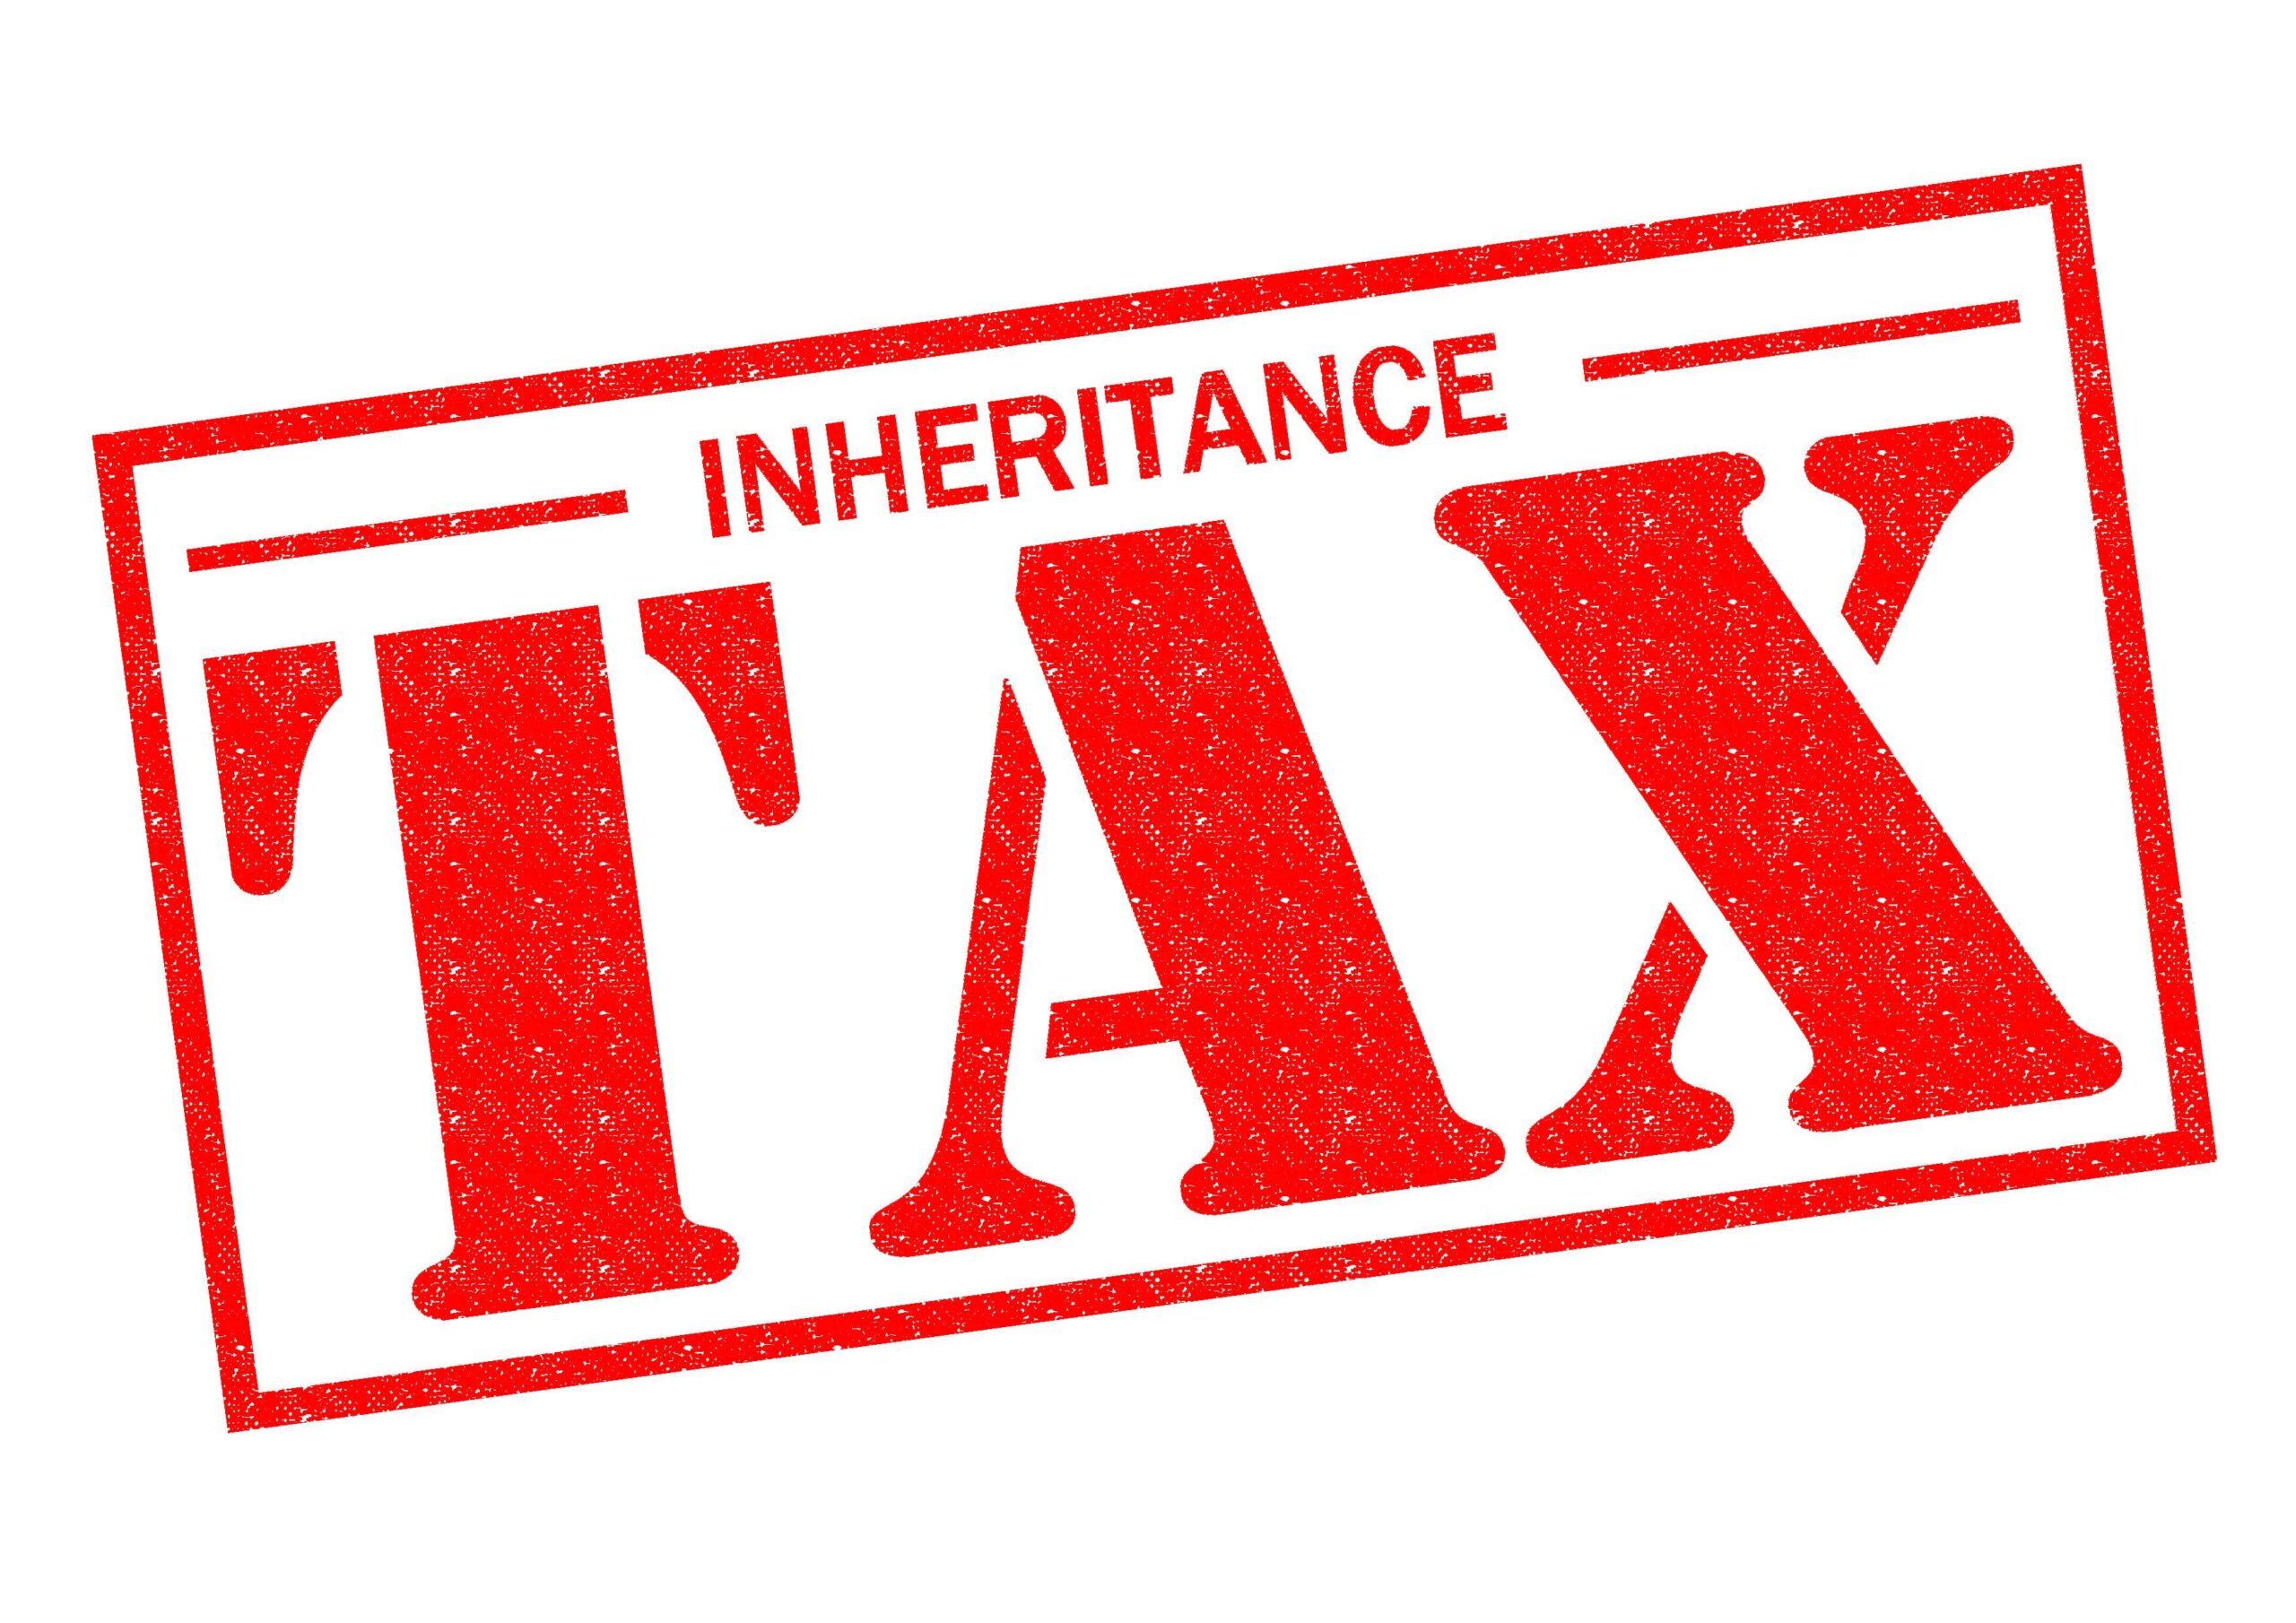 Graphic with 'Inheritance Tax' - inheritance tax receipts